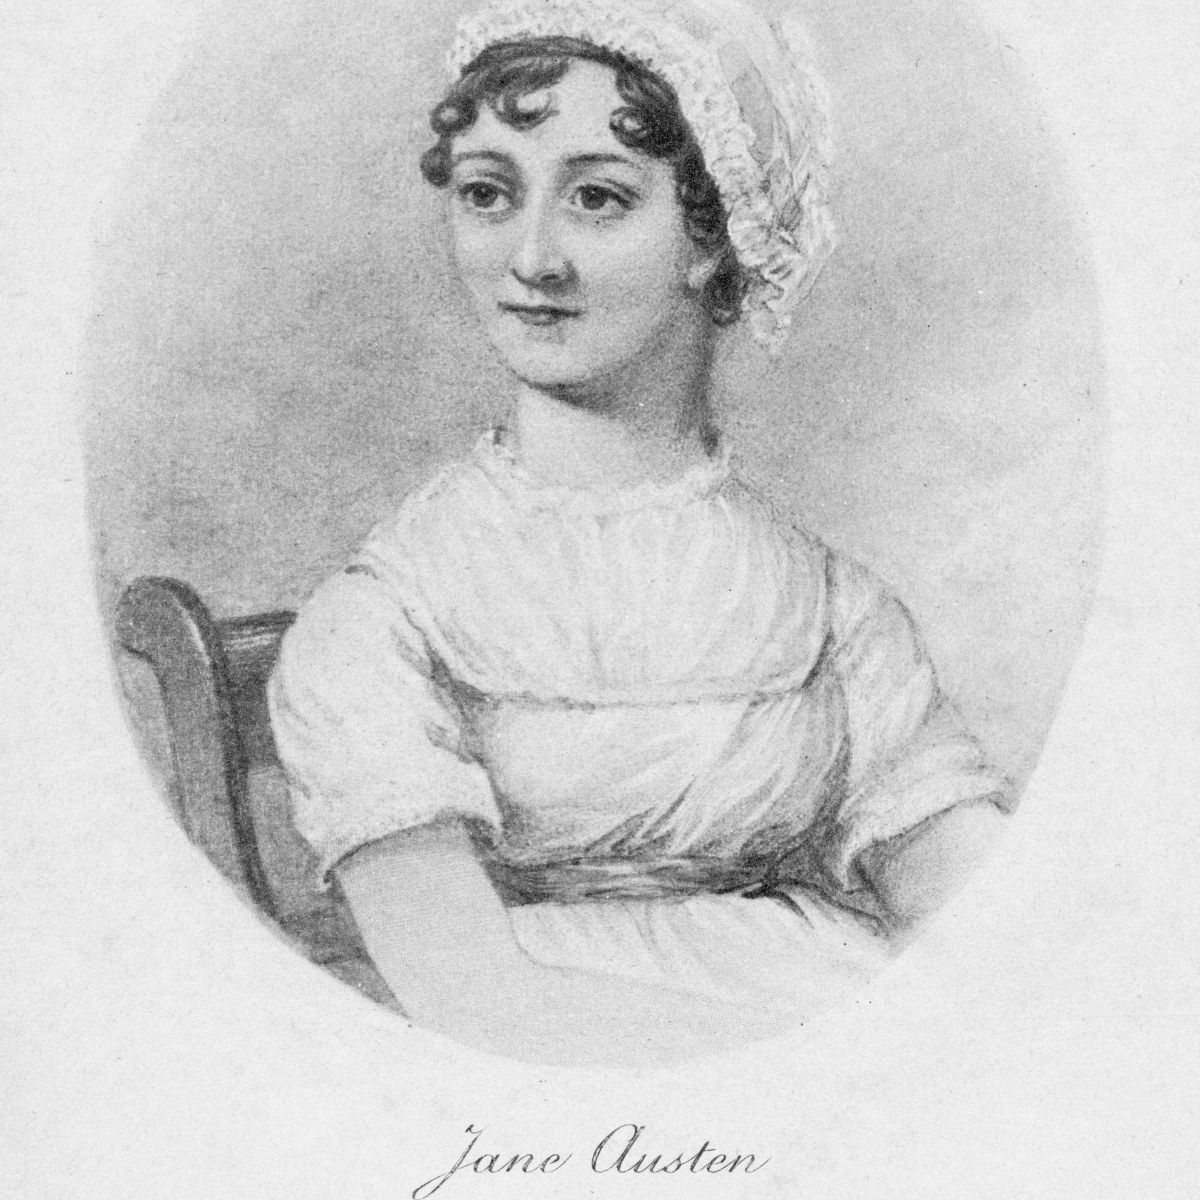 Jane Austen book sets